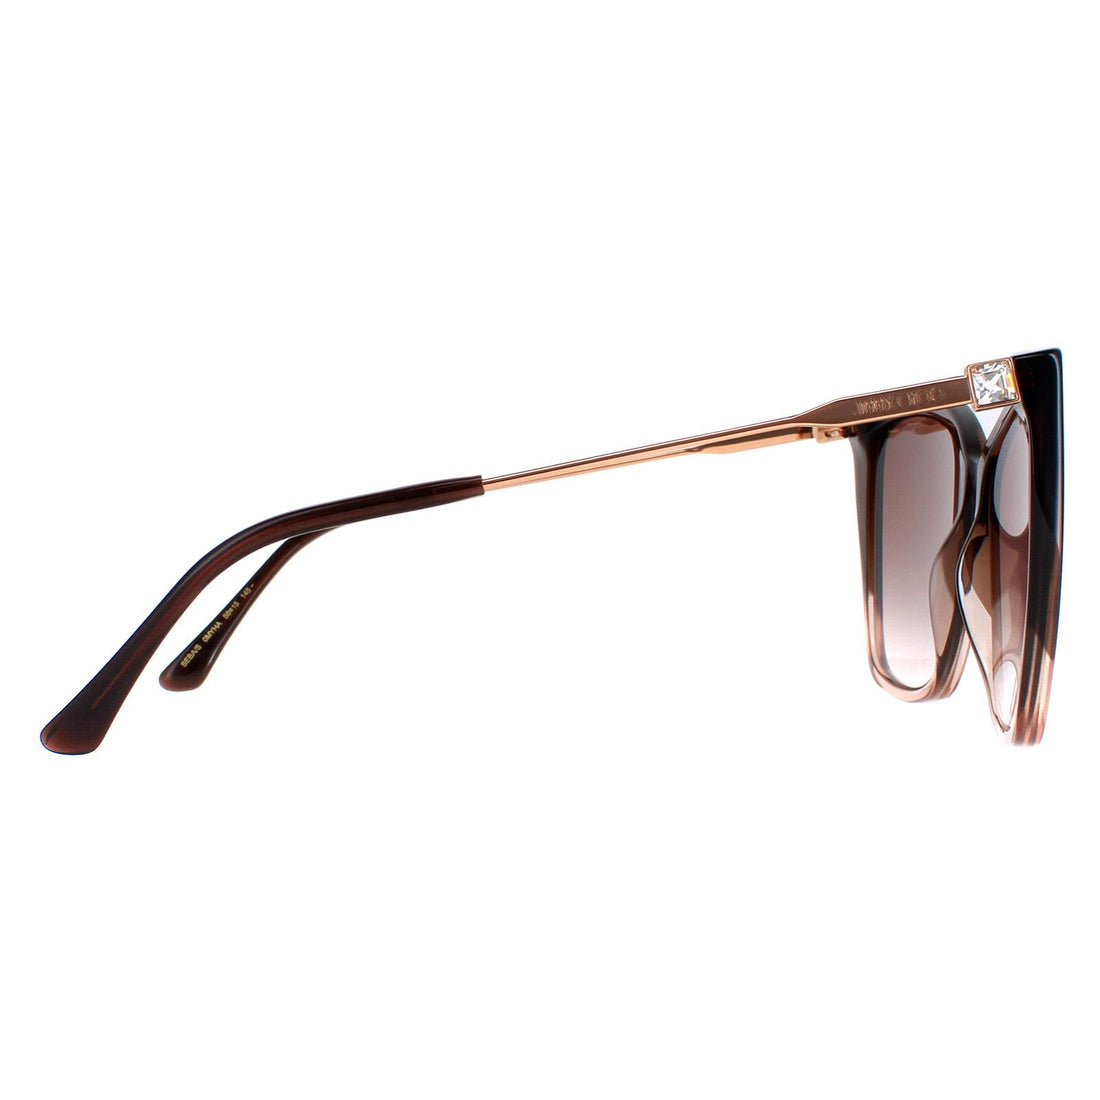 Jimmy Choo Sunglasses Seba/S 0MY/HA Brown Shaded Beige Brown Gradient